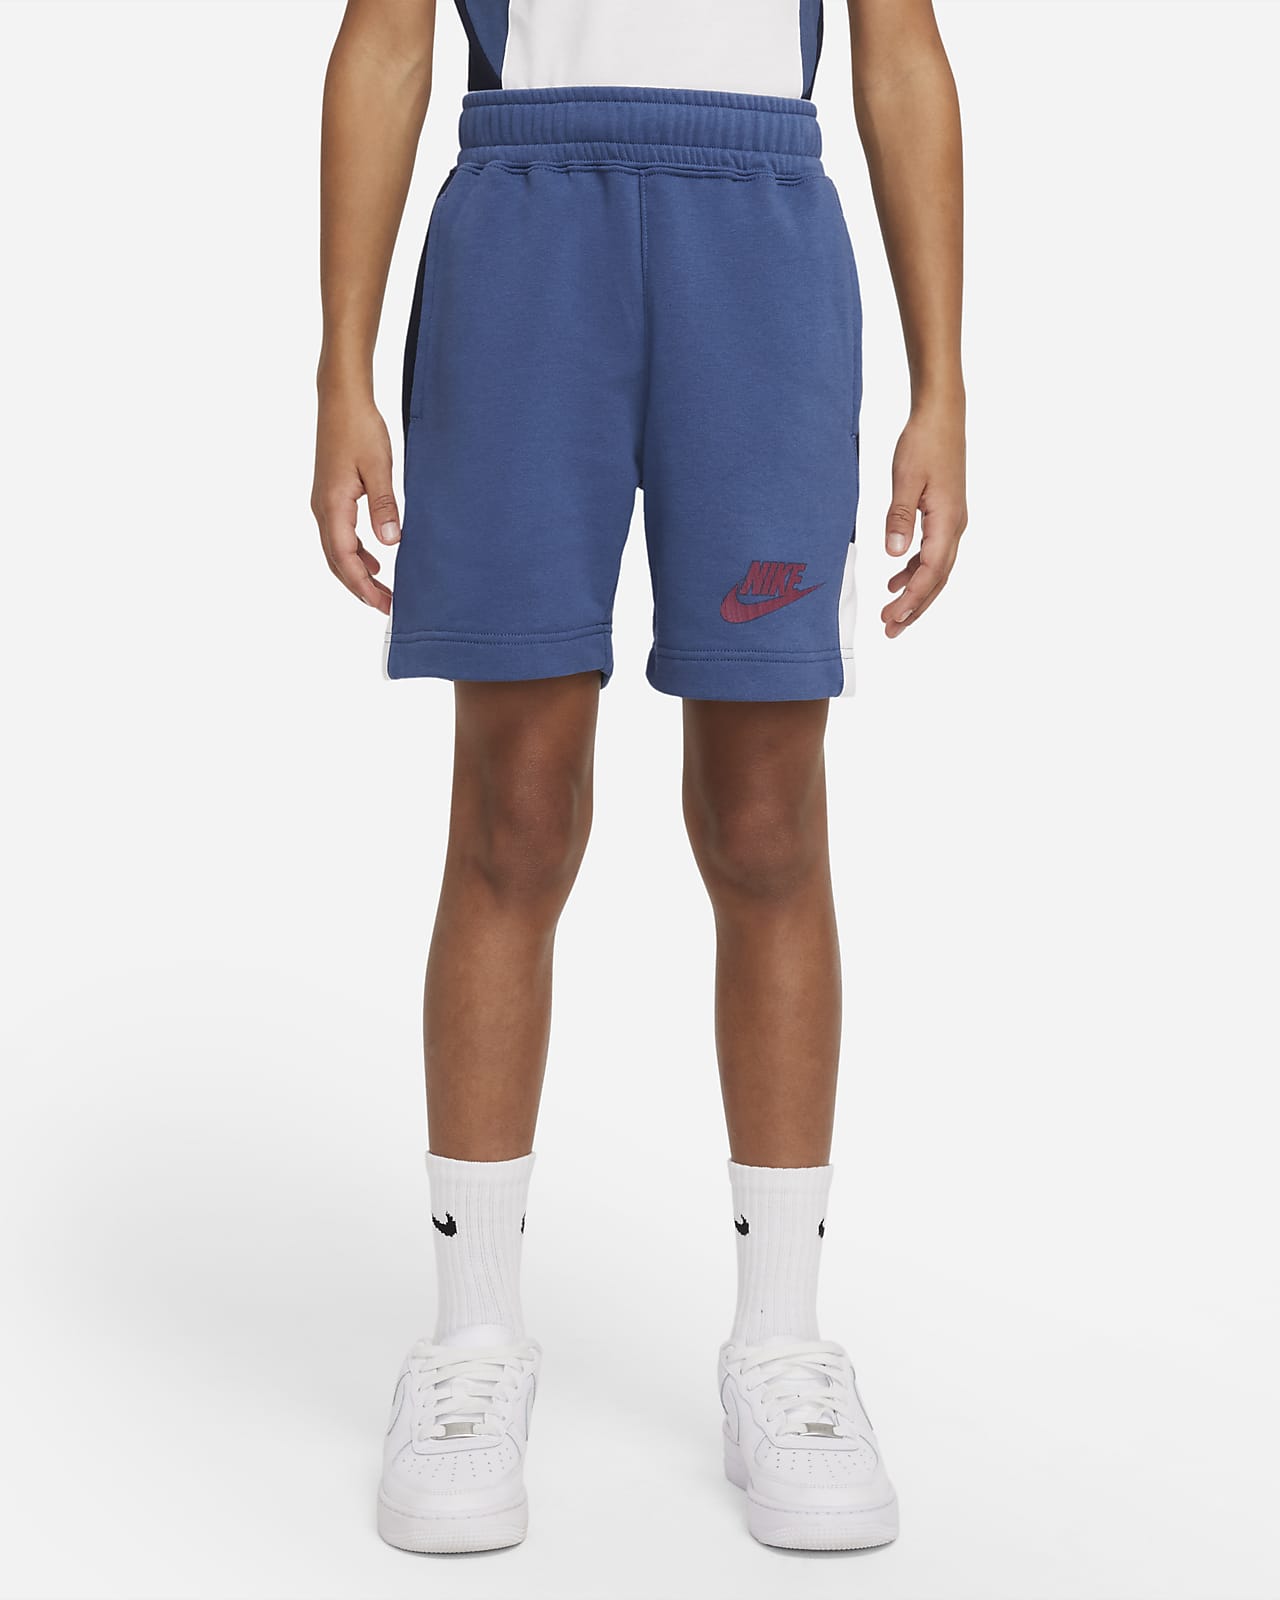 Nike Sportswear Hybrid Shorts aus French-Terry-Material für ältere Kinder (Jungen)